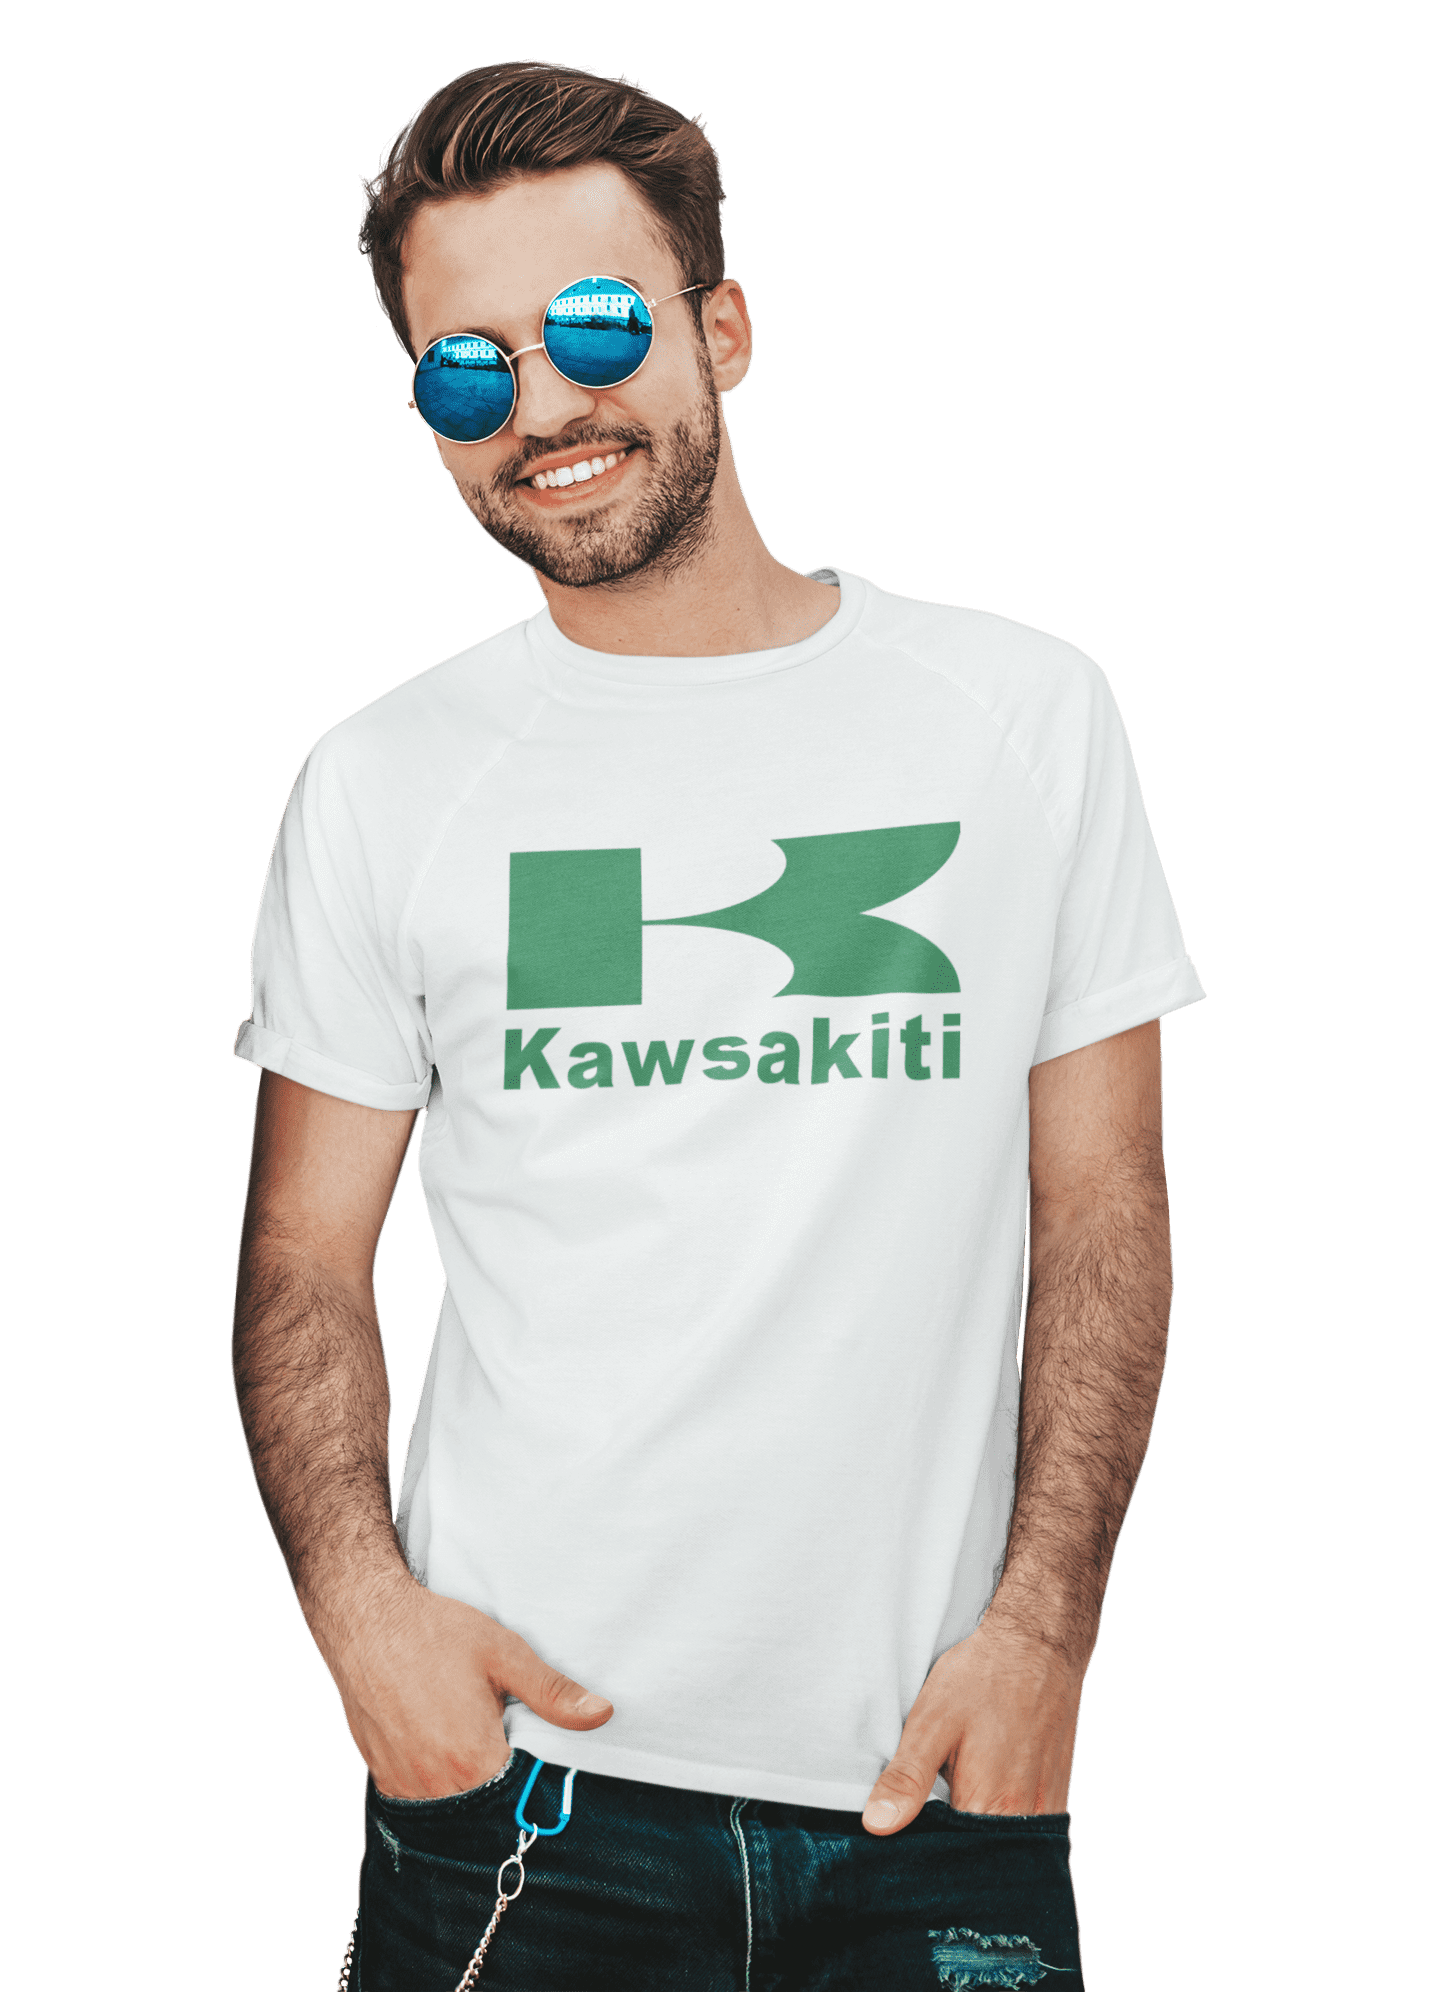 kaos plesetan kawsakiti